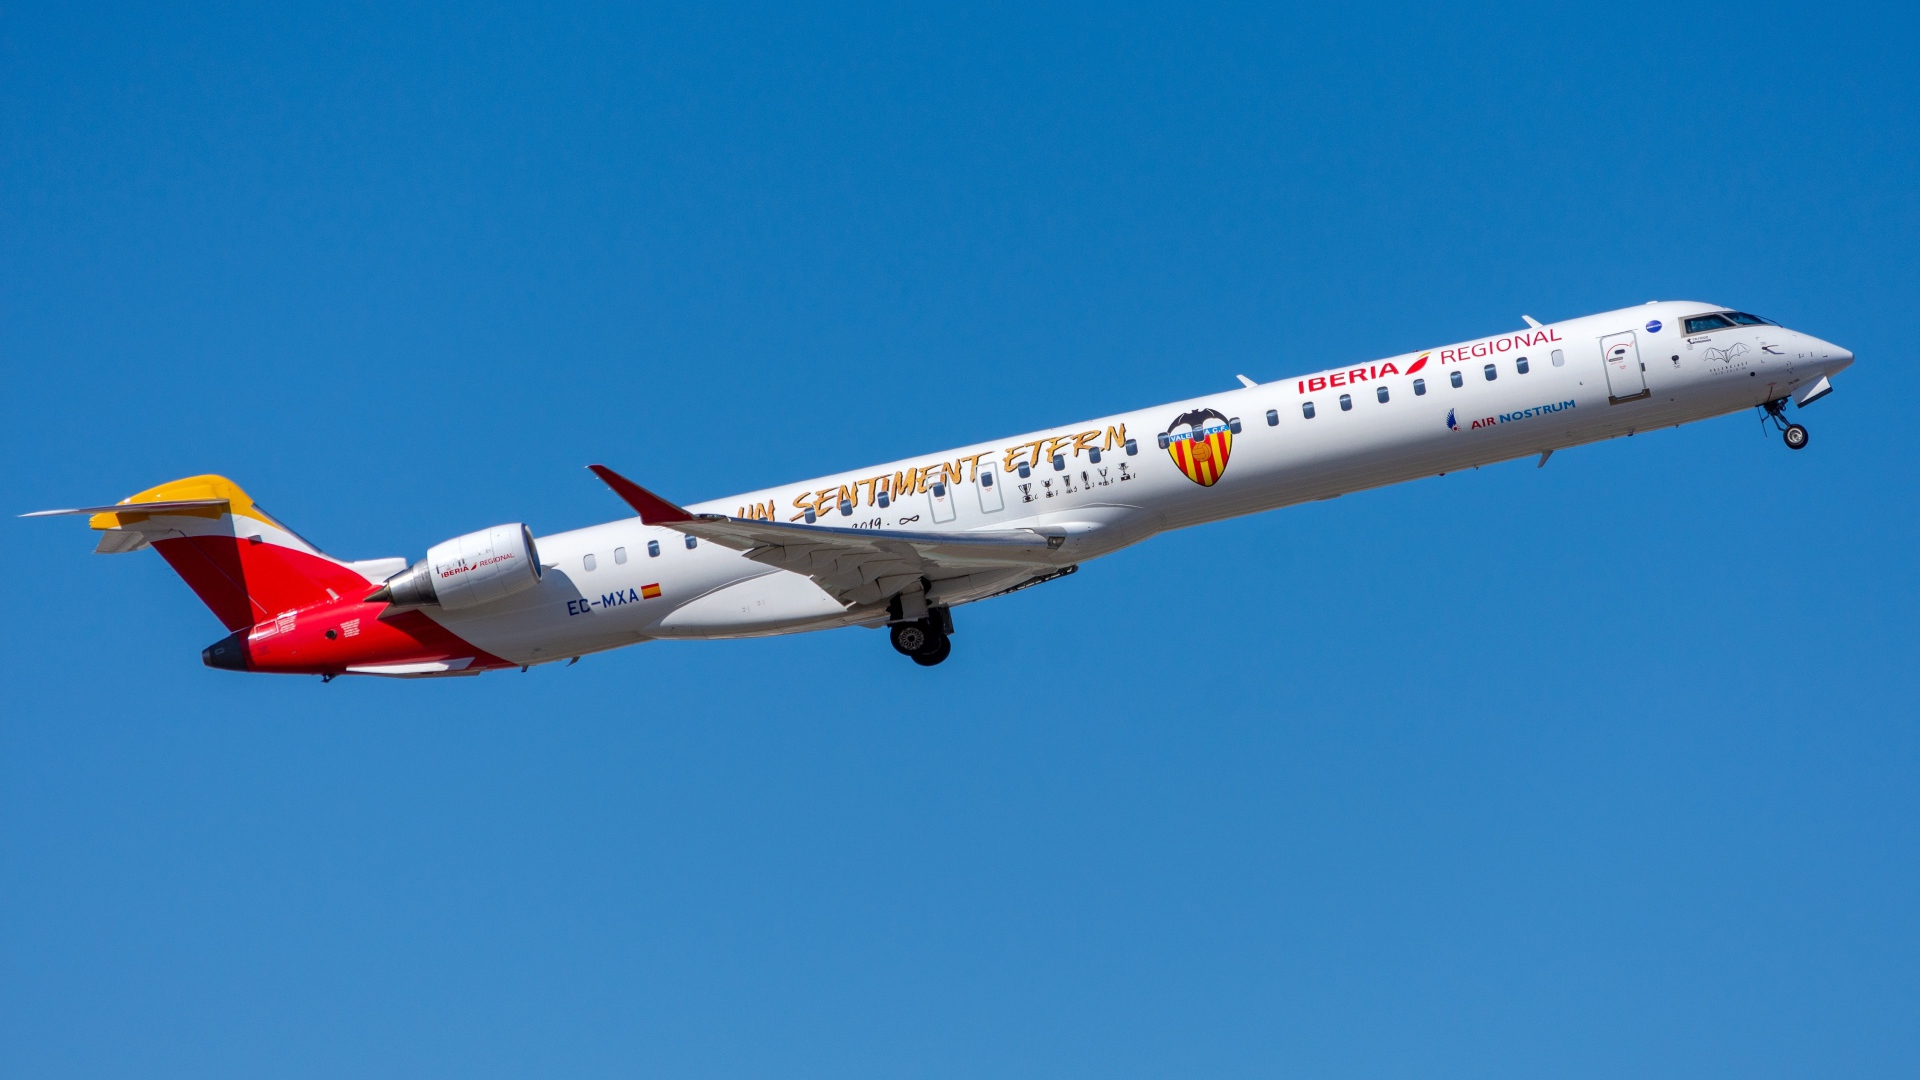 Air Nostrum Bombardier CRJ-1000 aircraft against blue sky